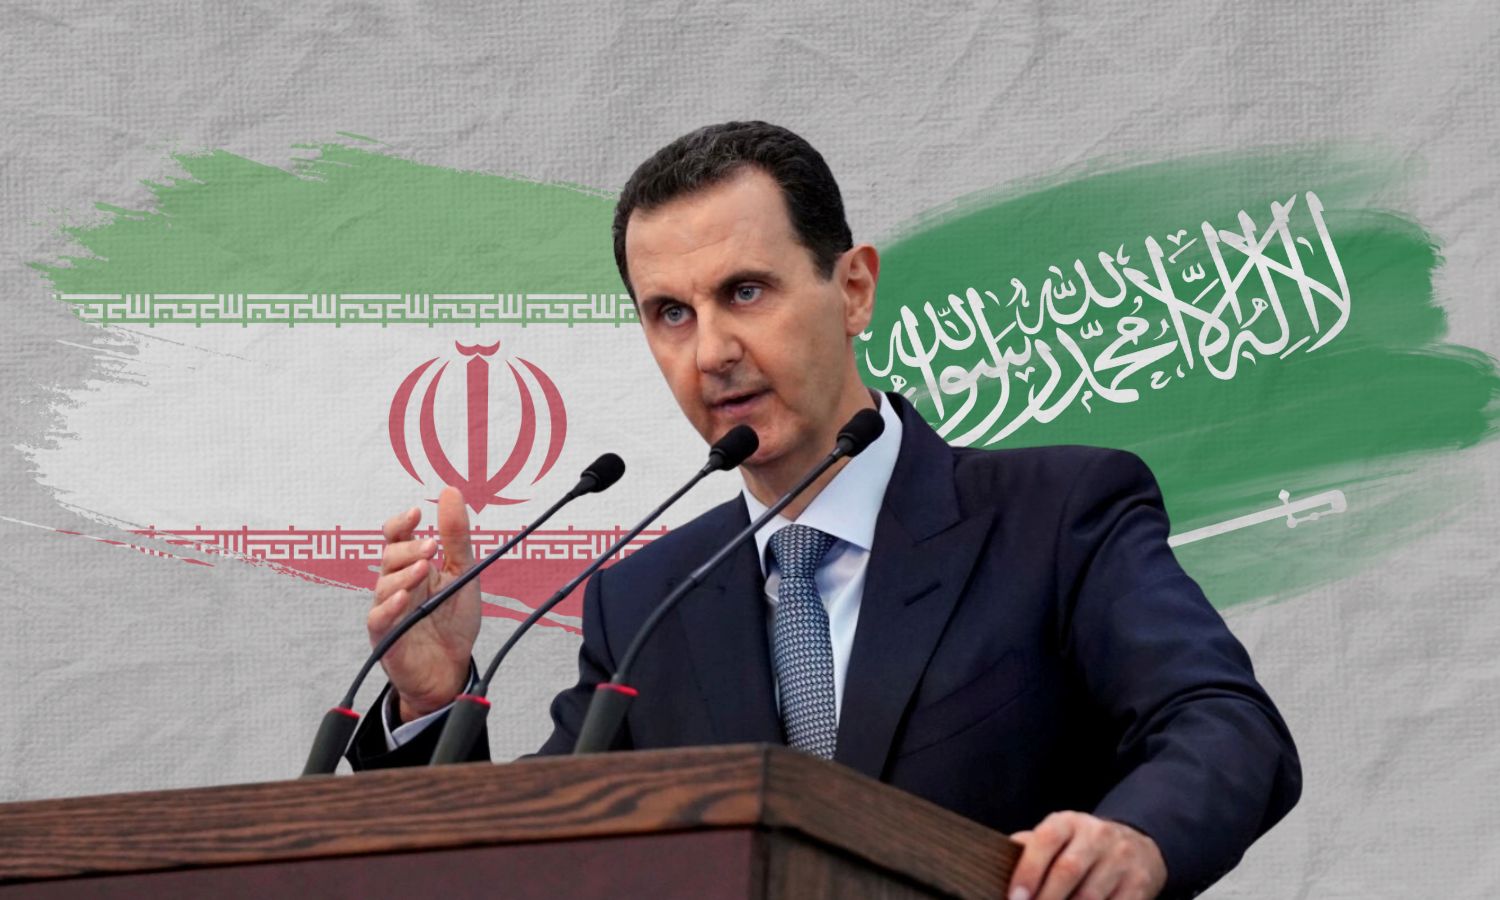 The president of the Syrian regime Bashar al-Assad (Edited by Enab Baladi)